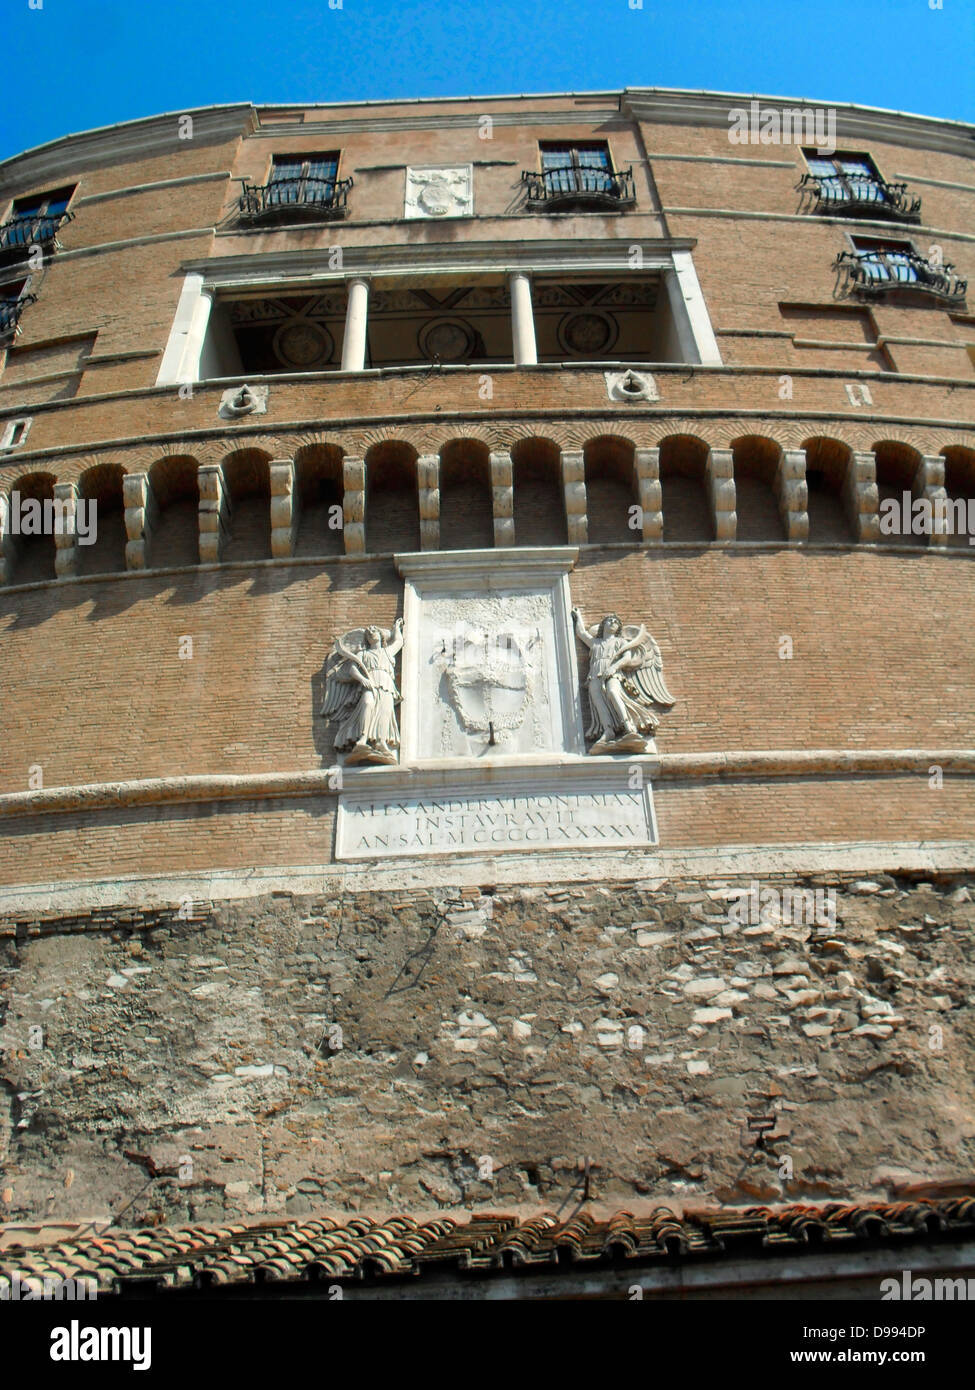 Le Mausolée d'Hadrien, connu sous le nom de Castel St Angelo un imposant bâtiment cylindrique dans le Parco Adriano, Rome, Italie. Il a été commandé par l'empereur romain Hadrien comme un mausolée pour lui et sa famille. Le bâtiment a été utilisé plus tard par les papes comme une forteresse et château, et est maintenant un musée. Il a été construit sur la rive droite du Tibre, entre 135 et 139 AD AD. Banque D'Images